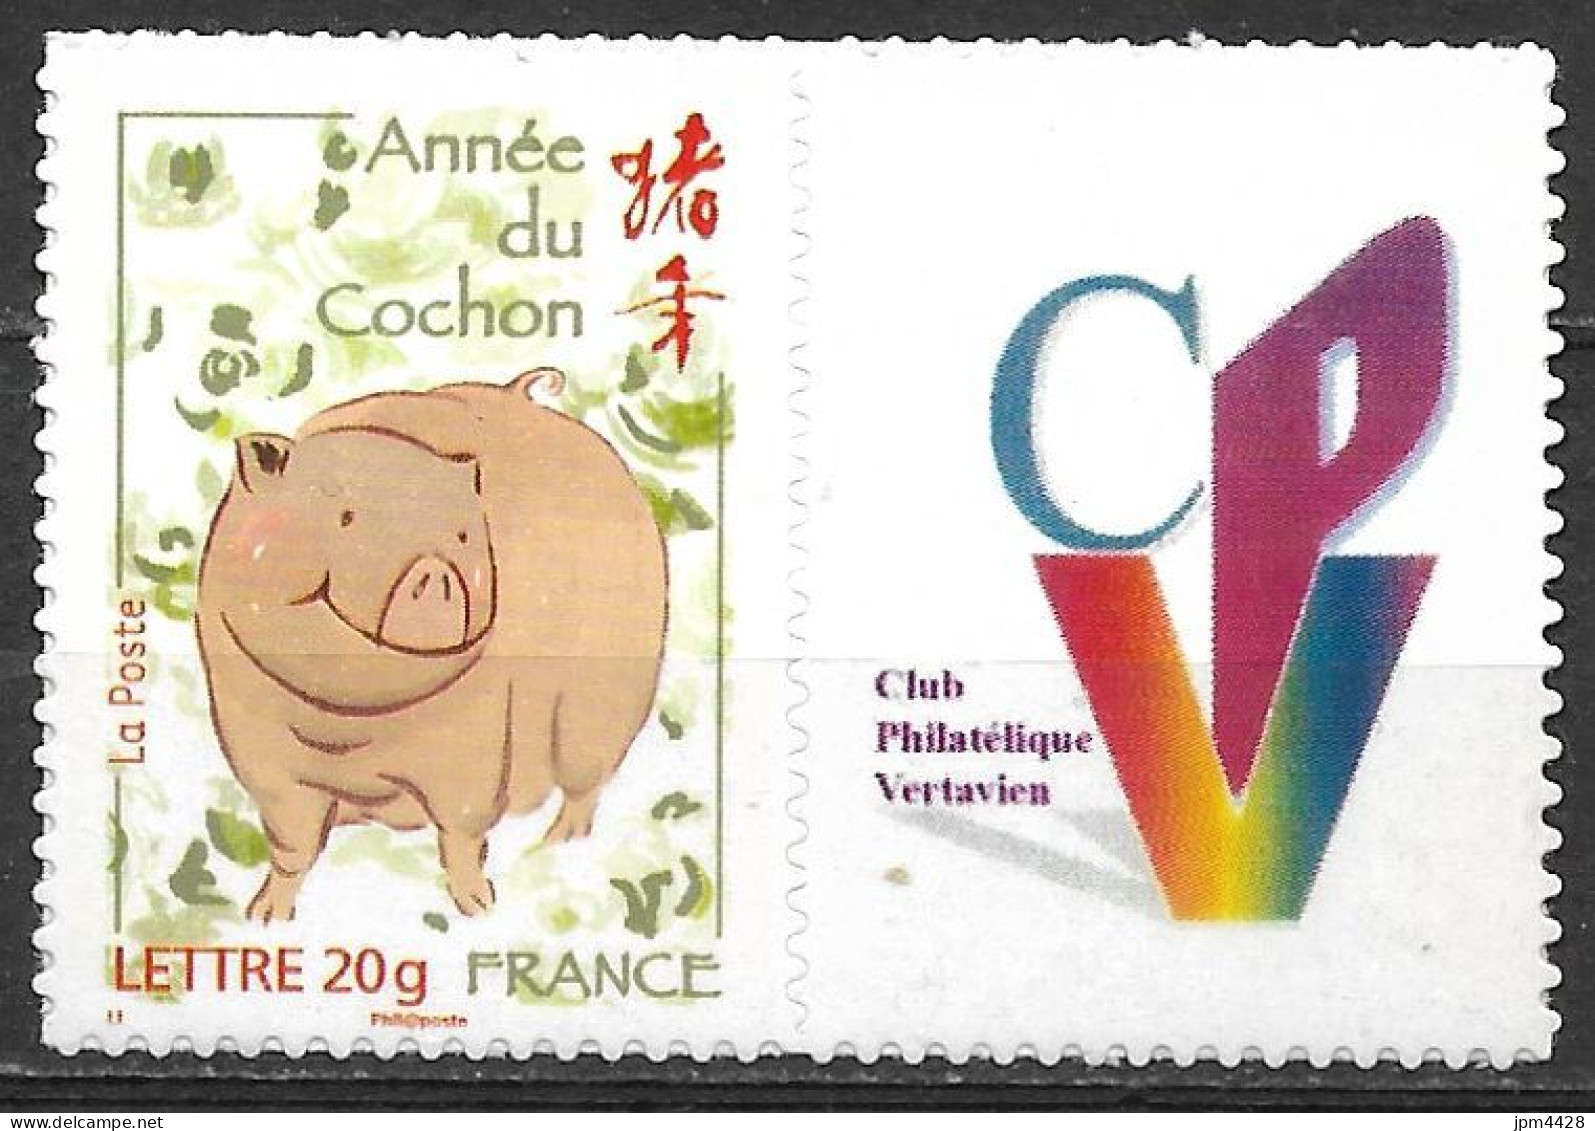 France -  4001 B Nouvel An Chinois Année Du Cochon  Personnalisé Logo Du CPV  Neuf** Adhésif - Autocollant - Neufs